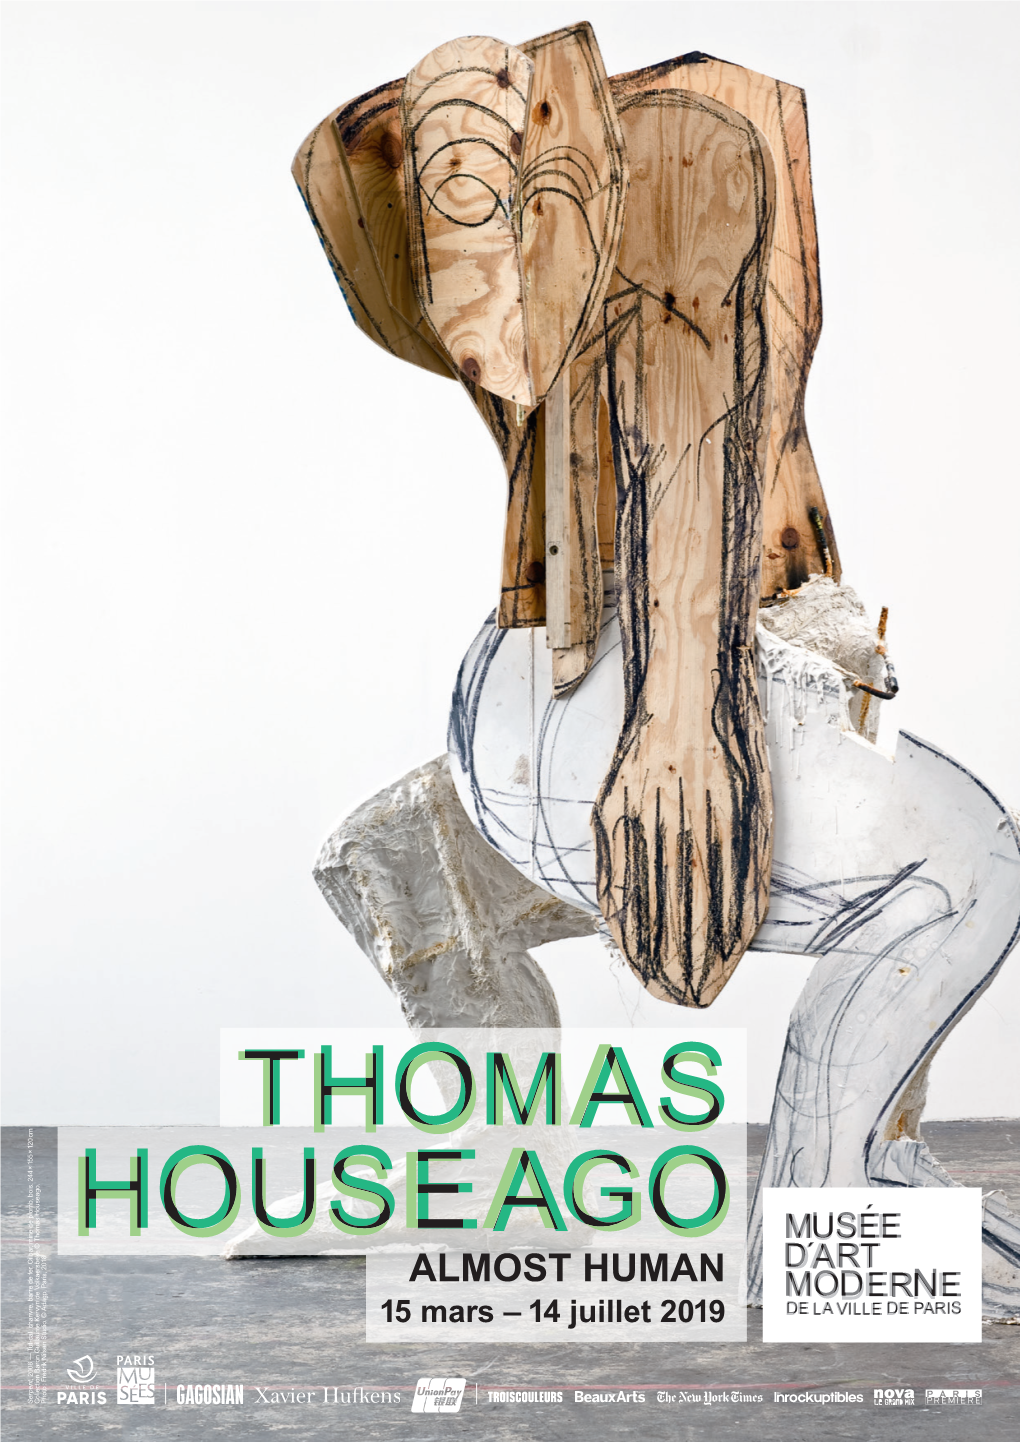 Thomas Houseago Almost Human